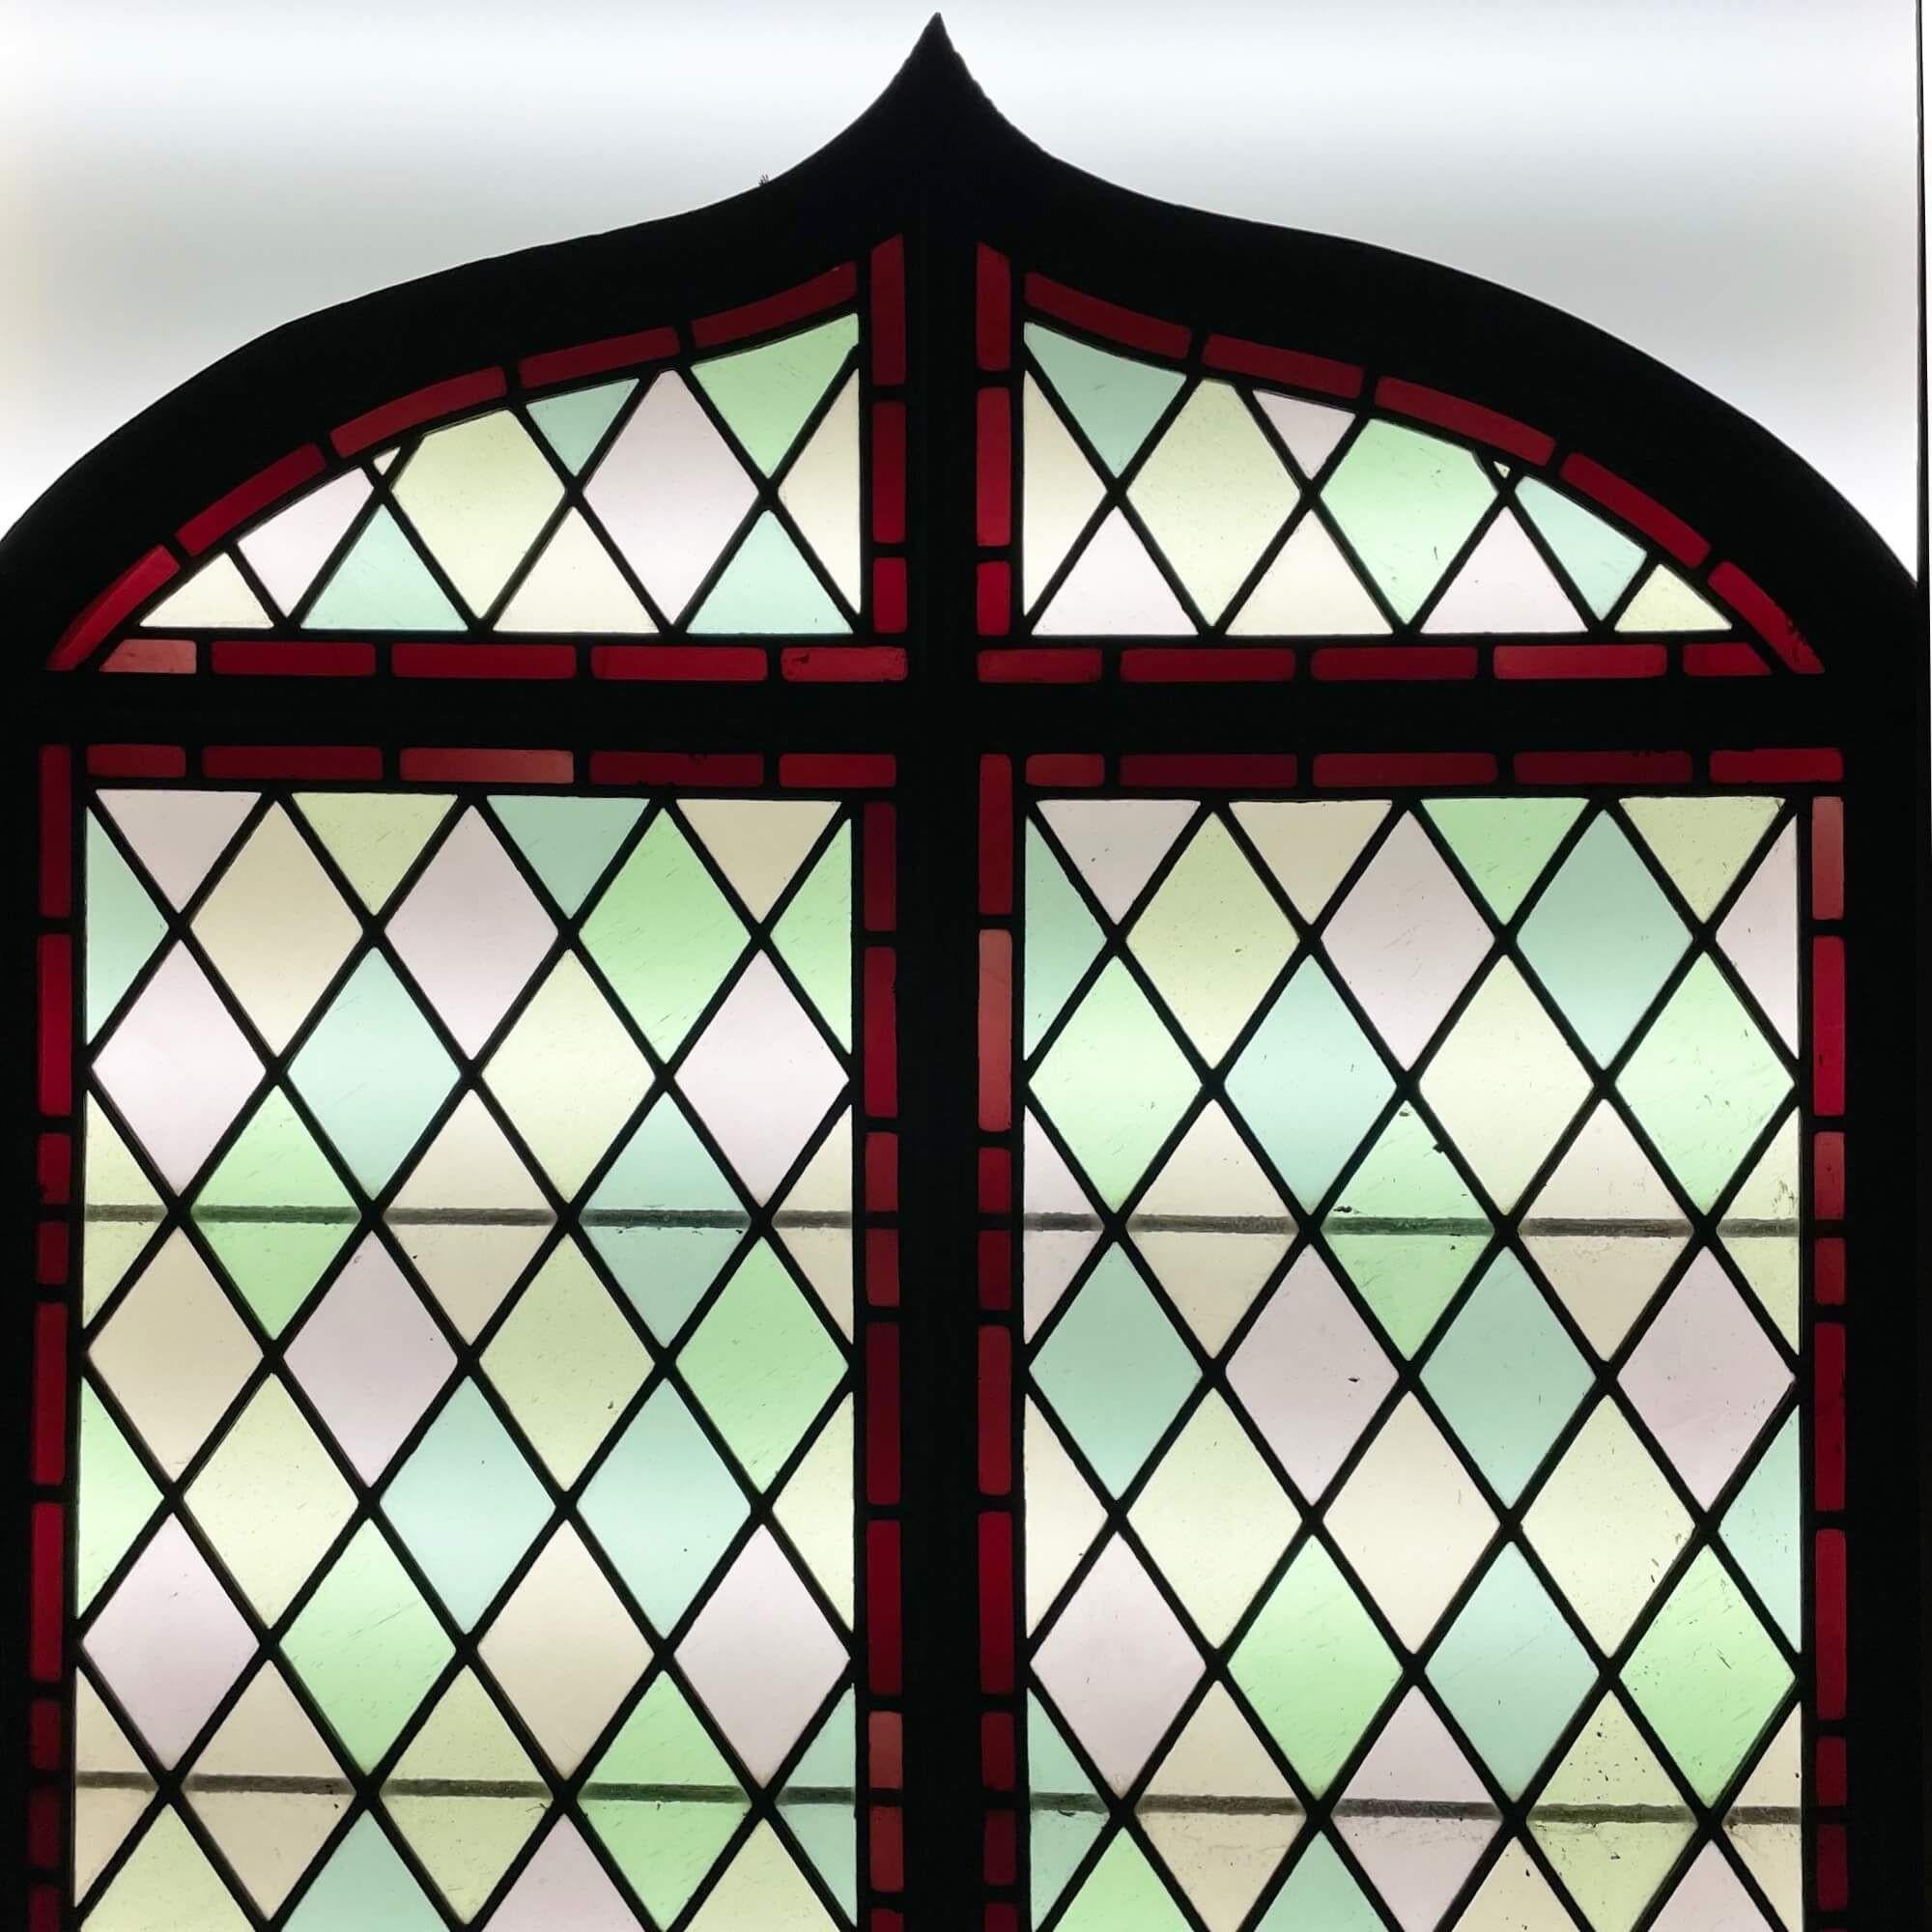 Ein antikes viktorianisches Bogenfenster mit Glasmalerei aus der Zeit um 1890. Dieses schlichte, aber elegante englische Kunstwerk besteht aus einem Gittermuster und einem ungewöhnlichen Spitzbogen, der ein klassisches, attraktives Design zeigt.

In